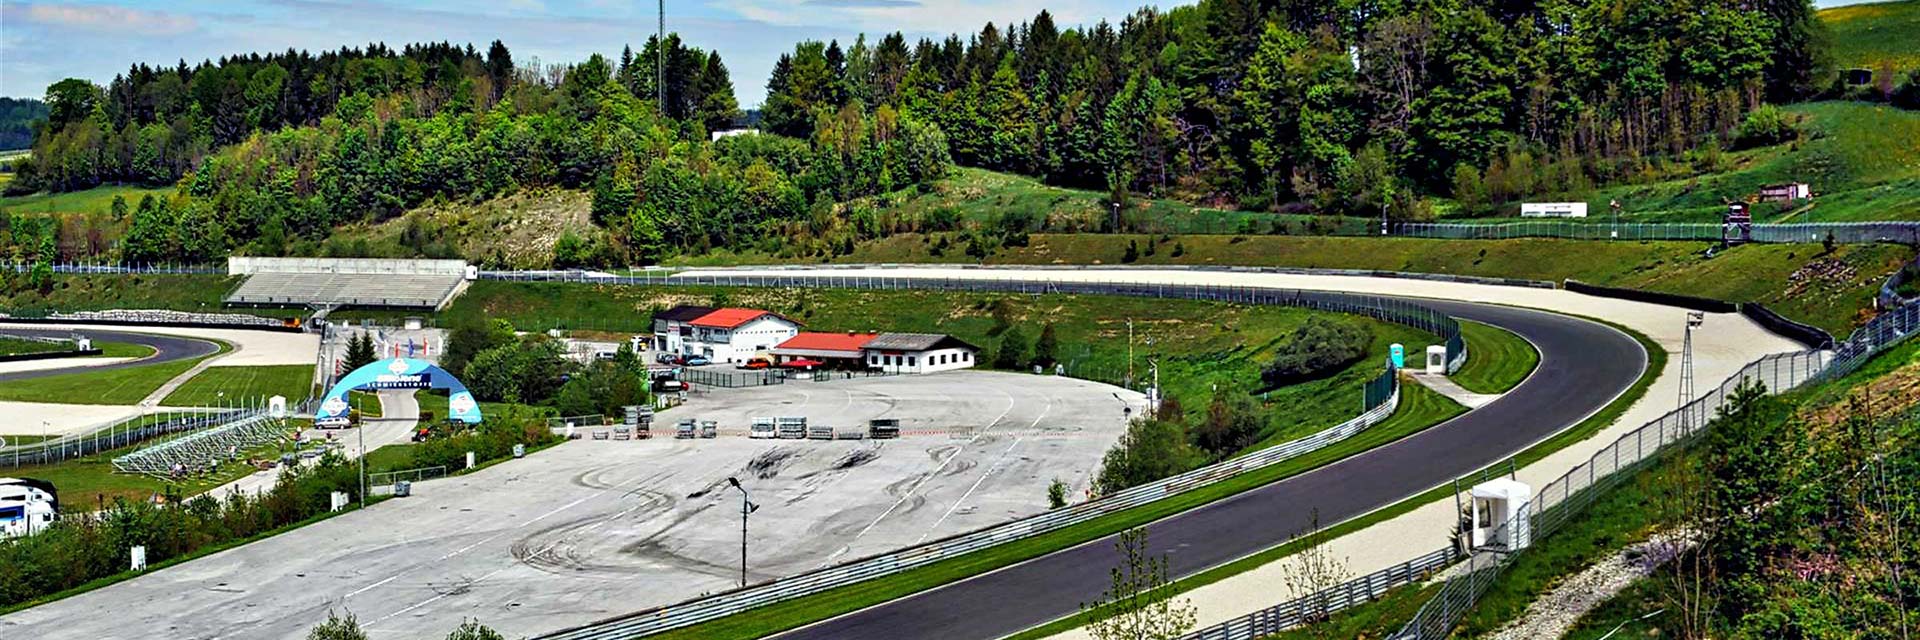 GEDLICH Racing - Racetrack Salzburgring